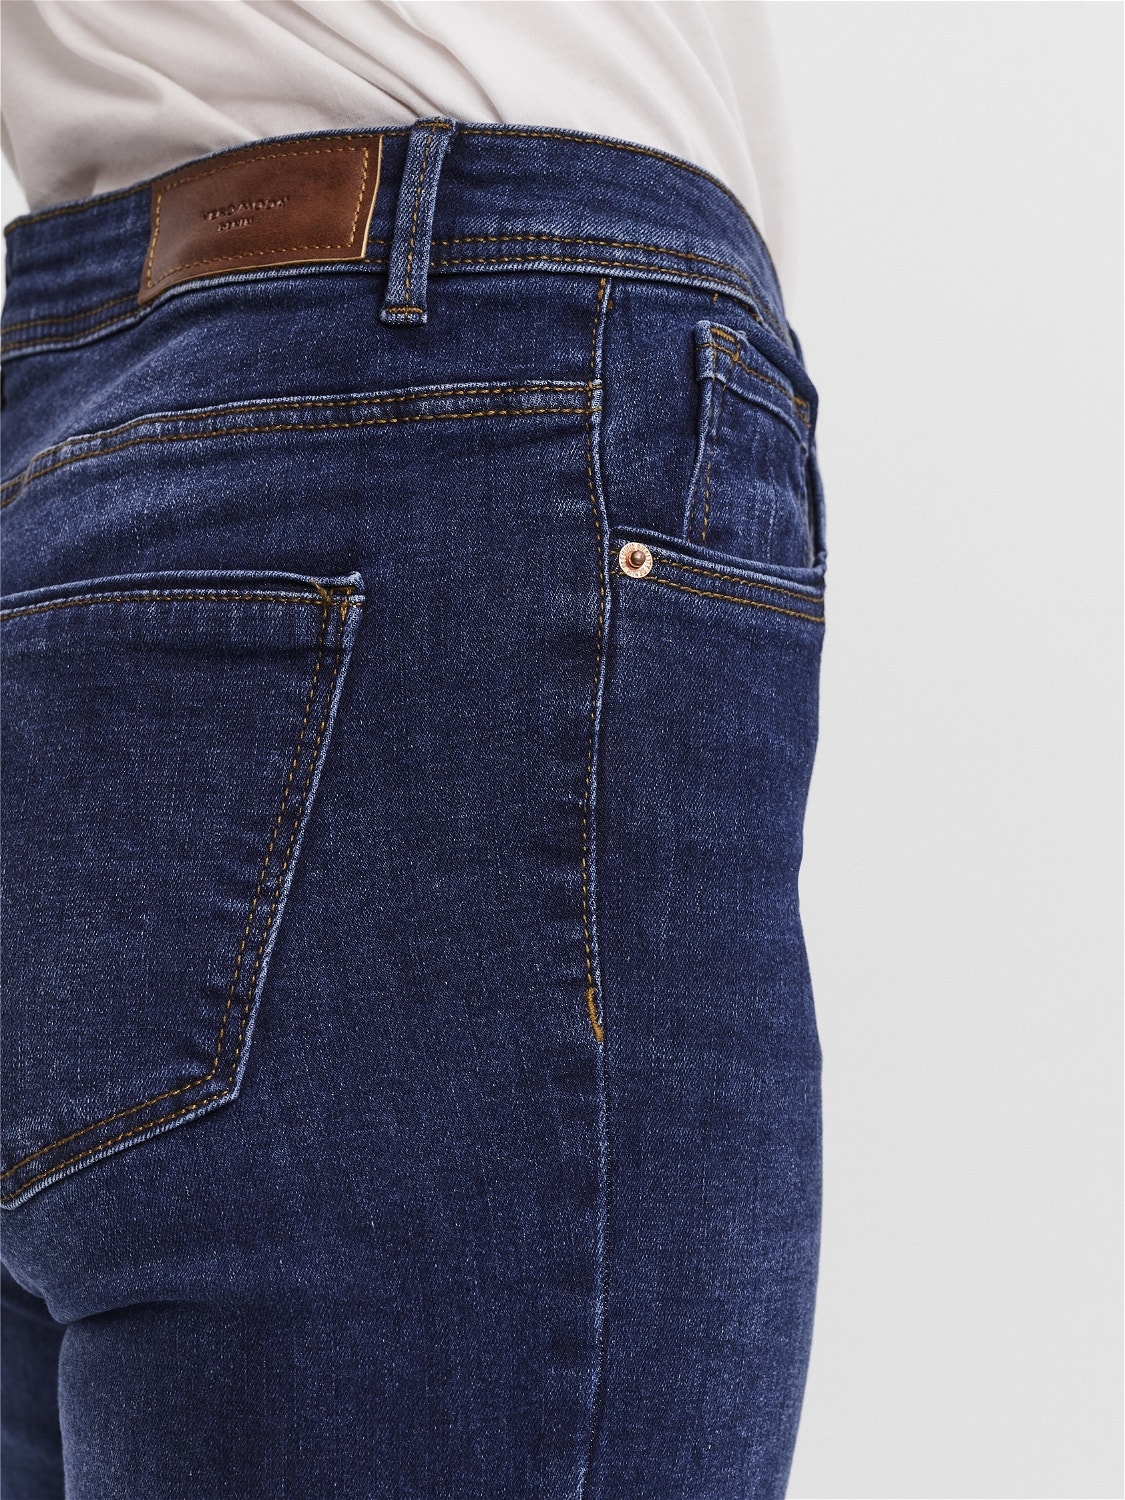 Vero Moda VMTANYA Skinny Fit Jeans -Dark Blue Denim - 10251657